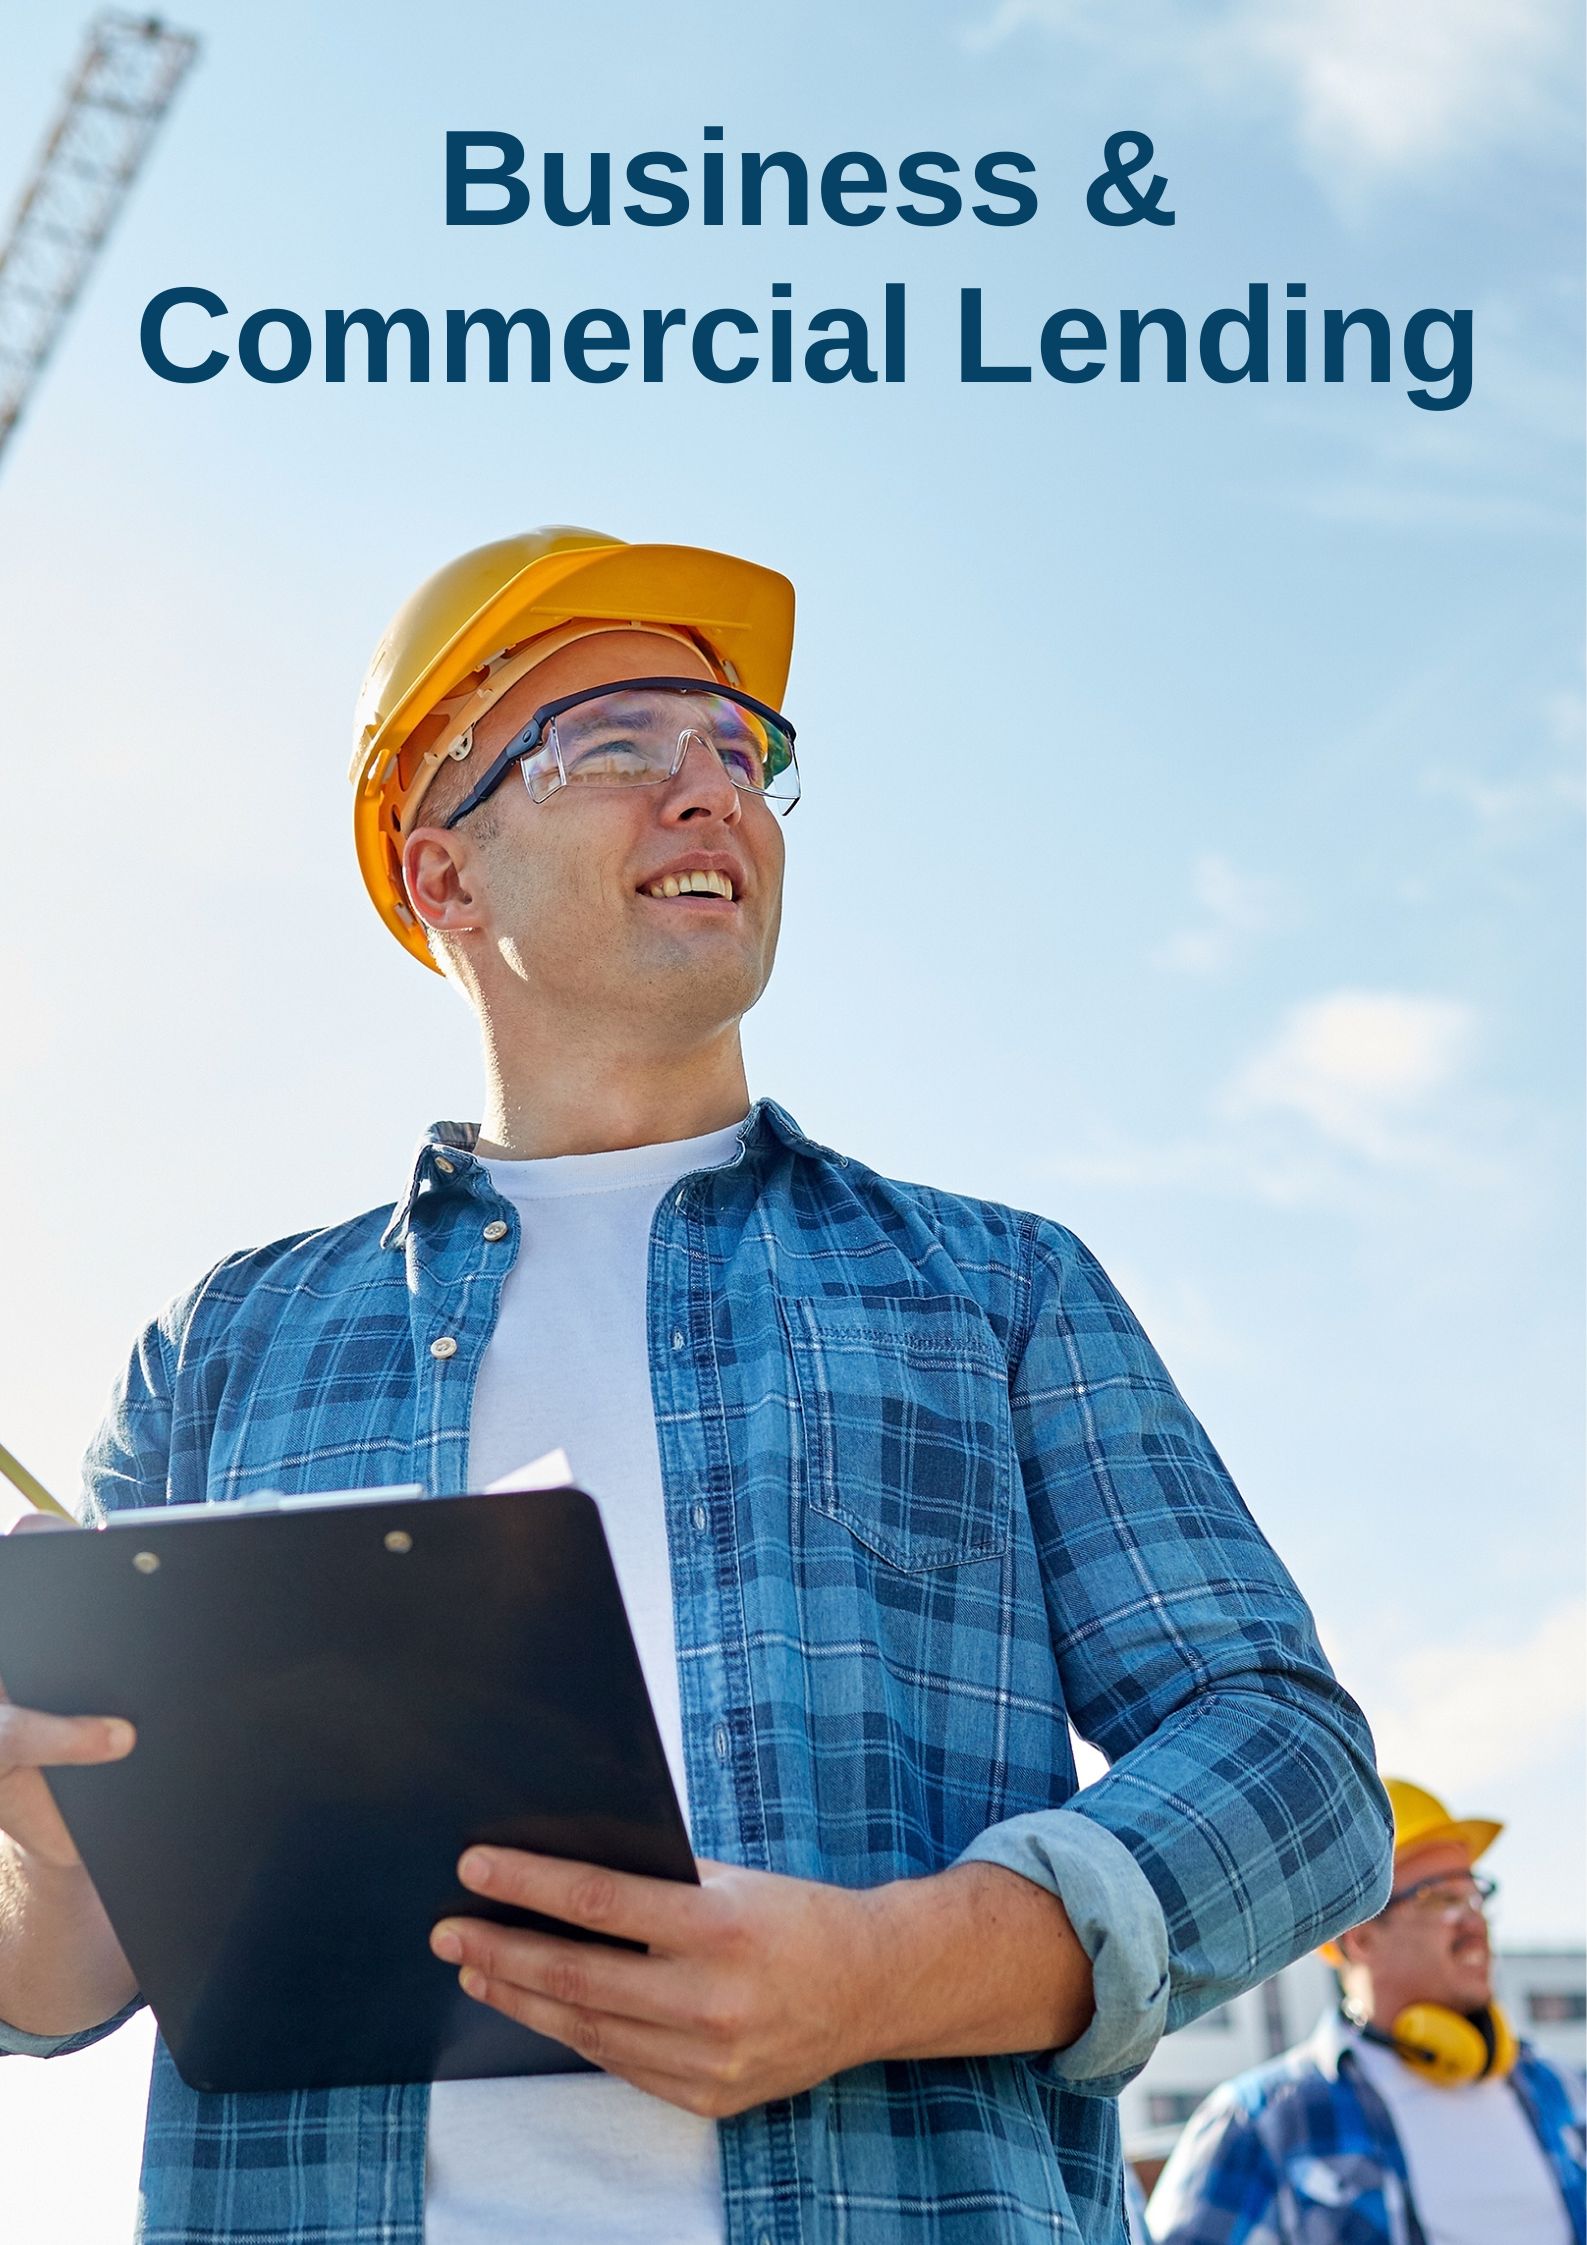 Business & Commercial Lending